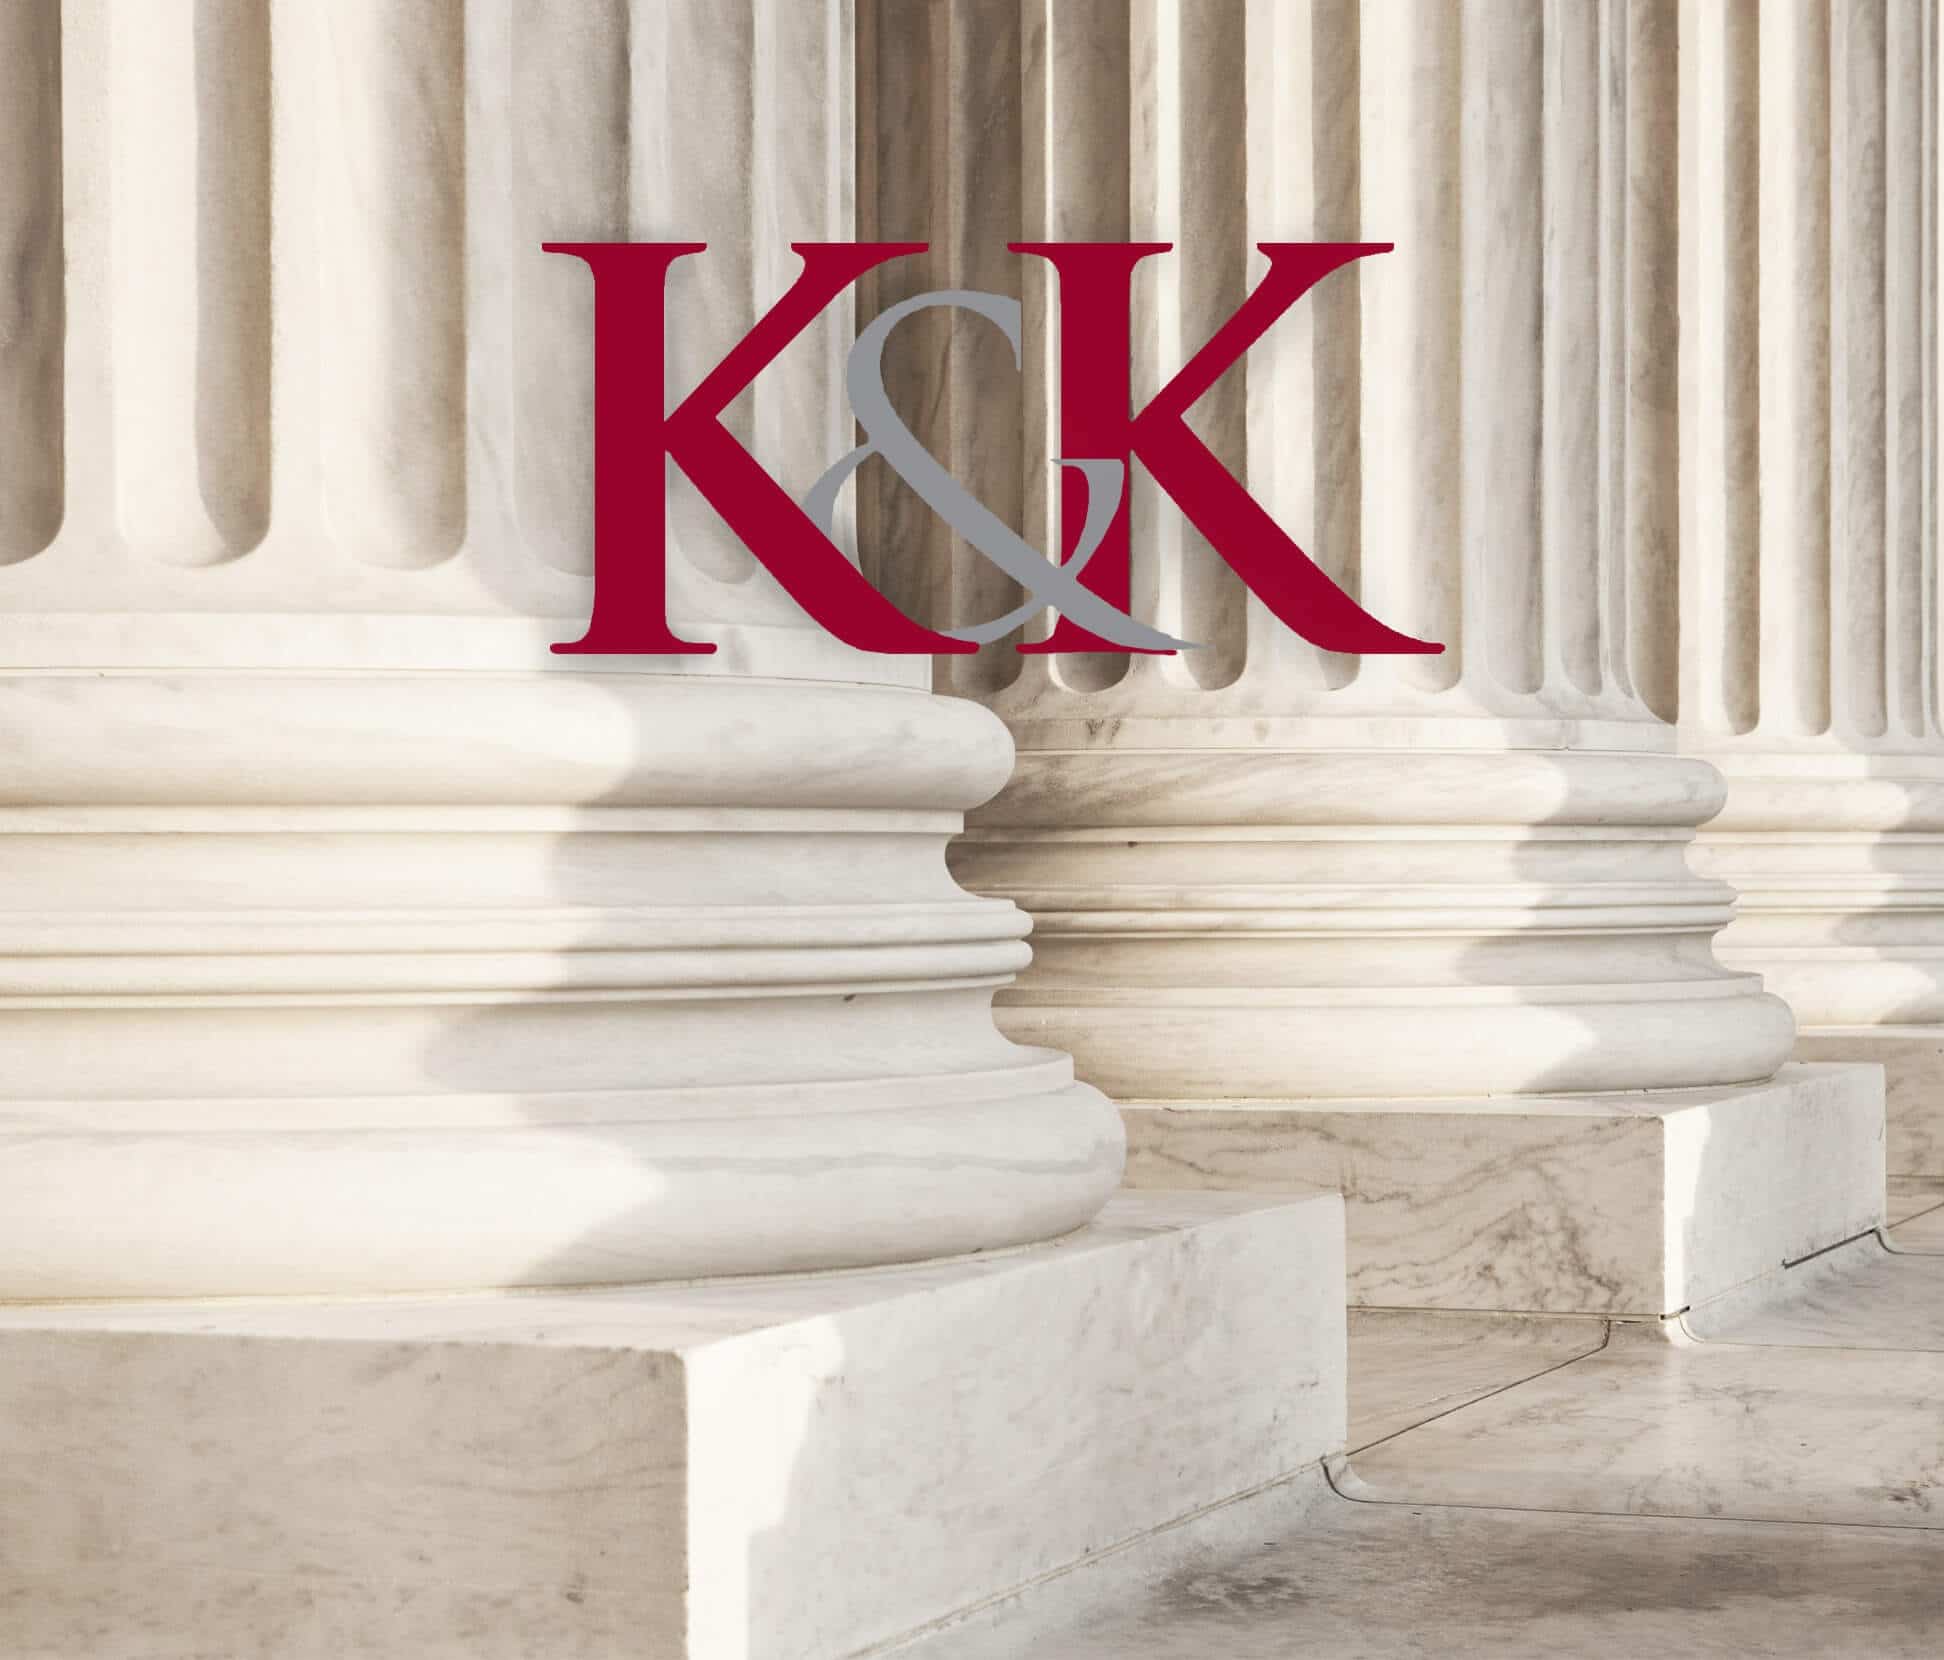 K&K in front of white pillars badge.